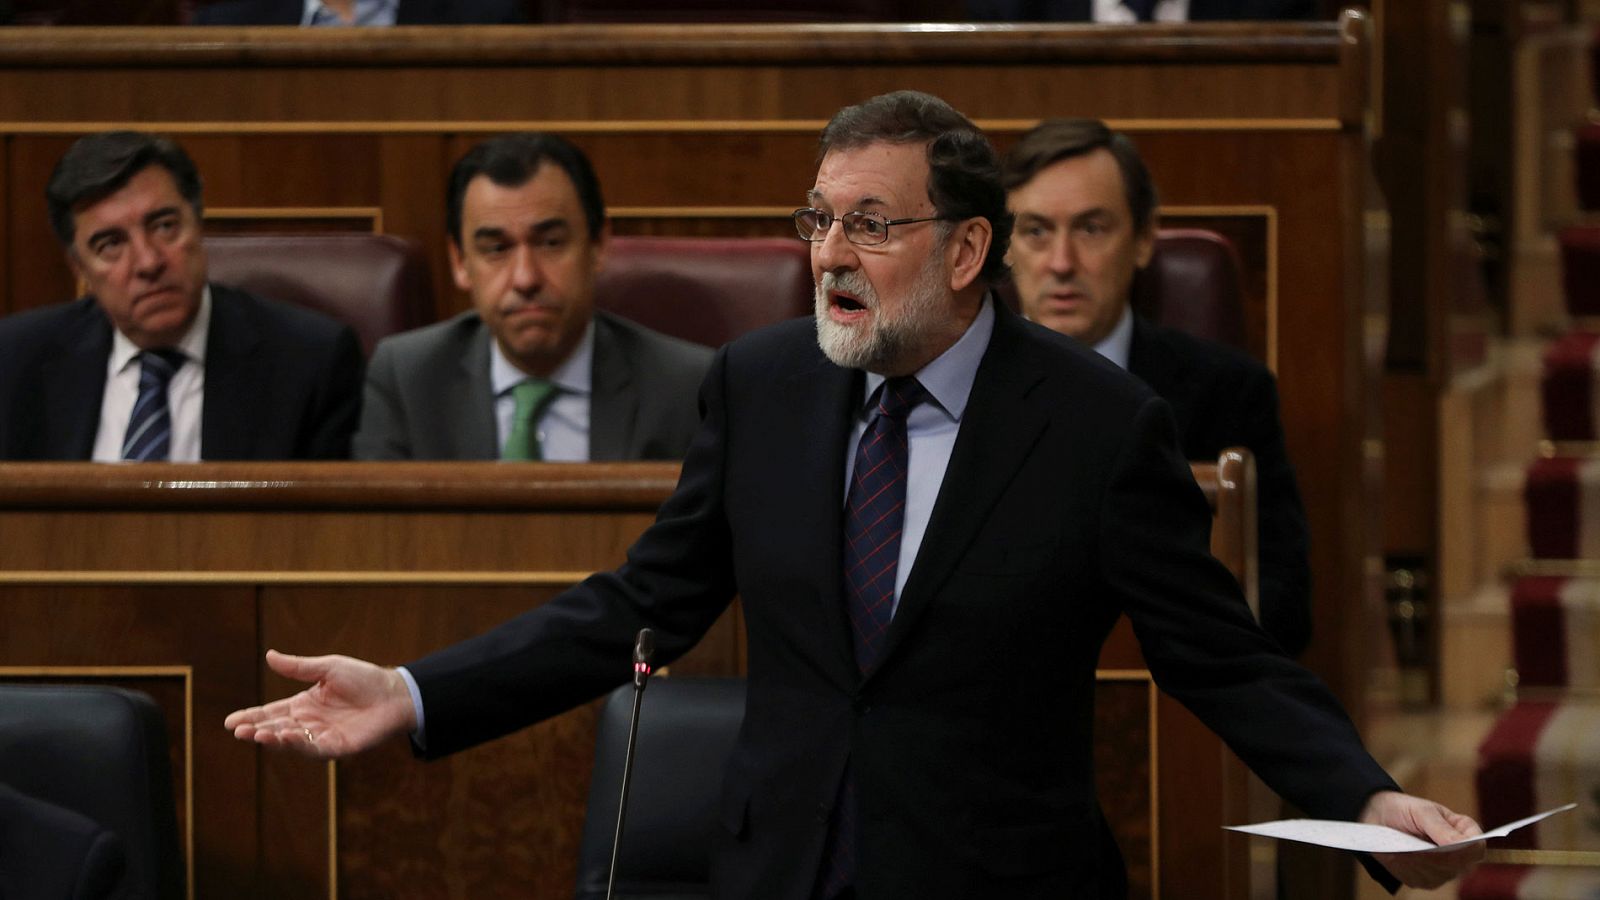 Desafío independentista - Rajoy espera tener un diálogo "normal y civilizado" cuando "las cosas se normalicen" en Cataluña - RTVE.es